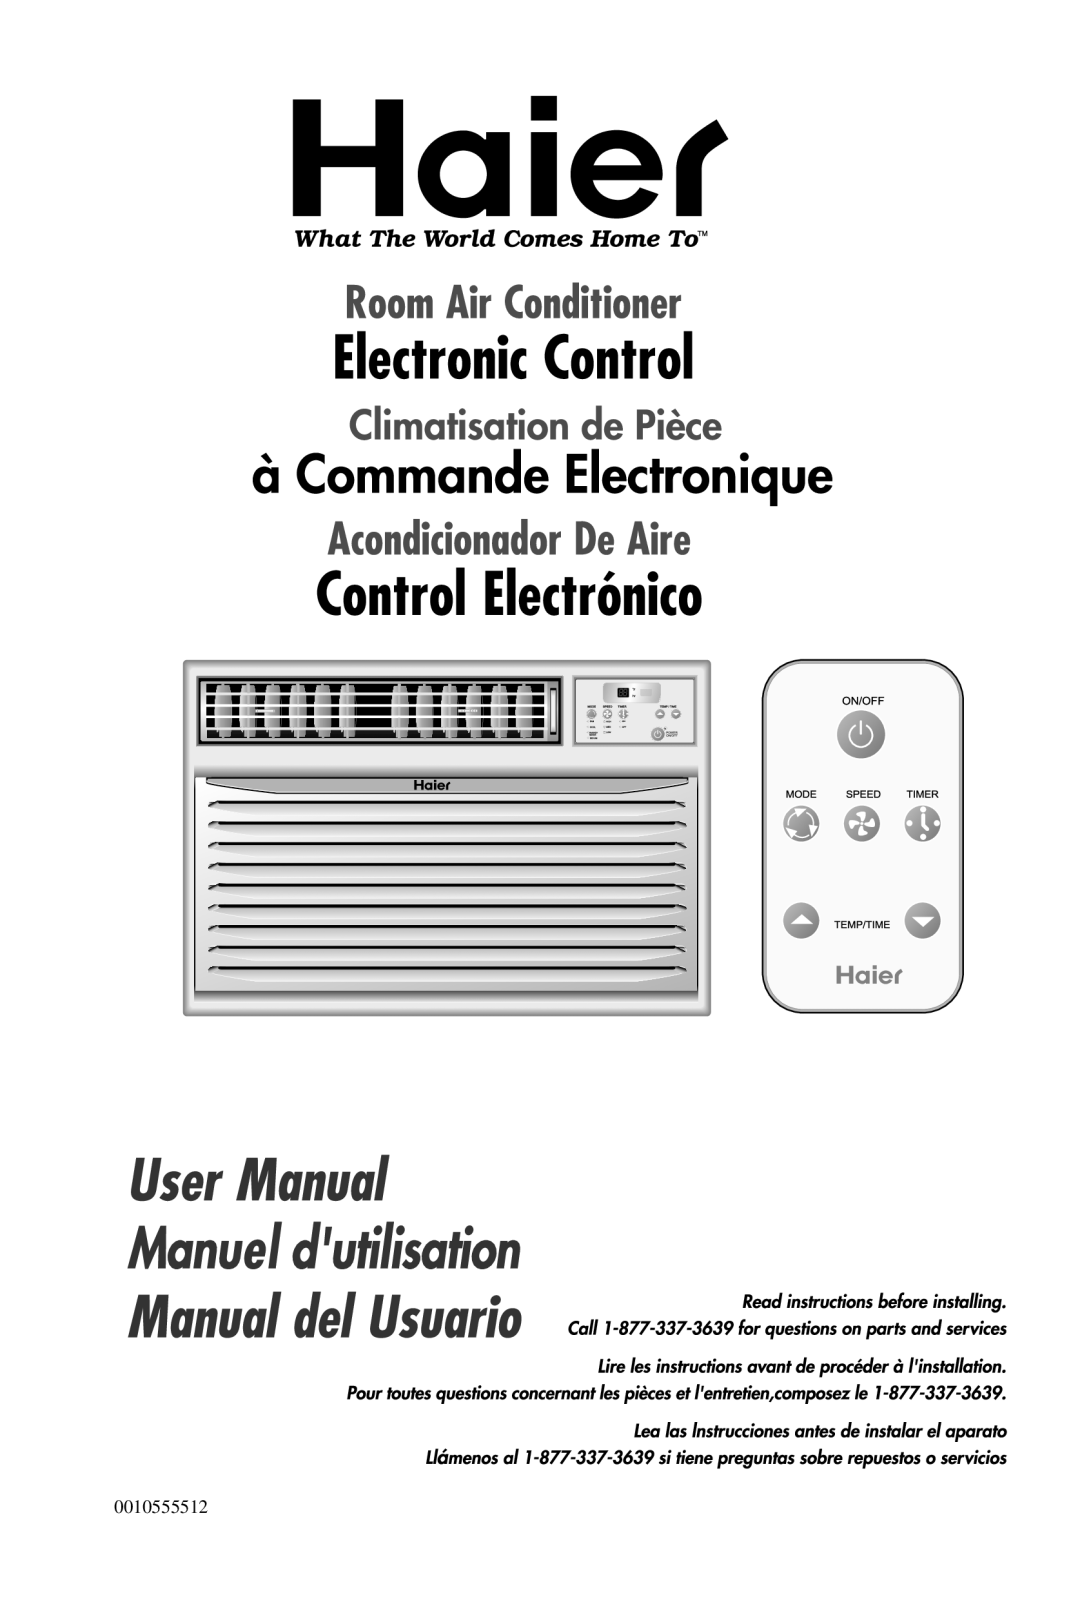 Haier HWR18VC5 manual 0010555512 